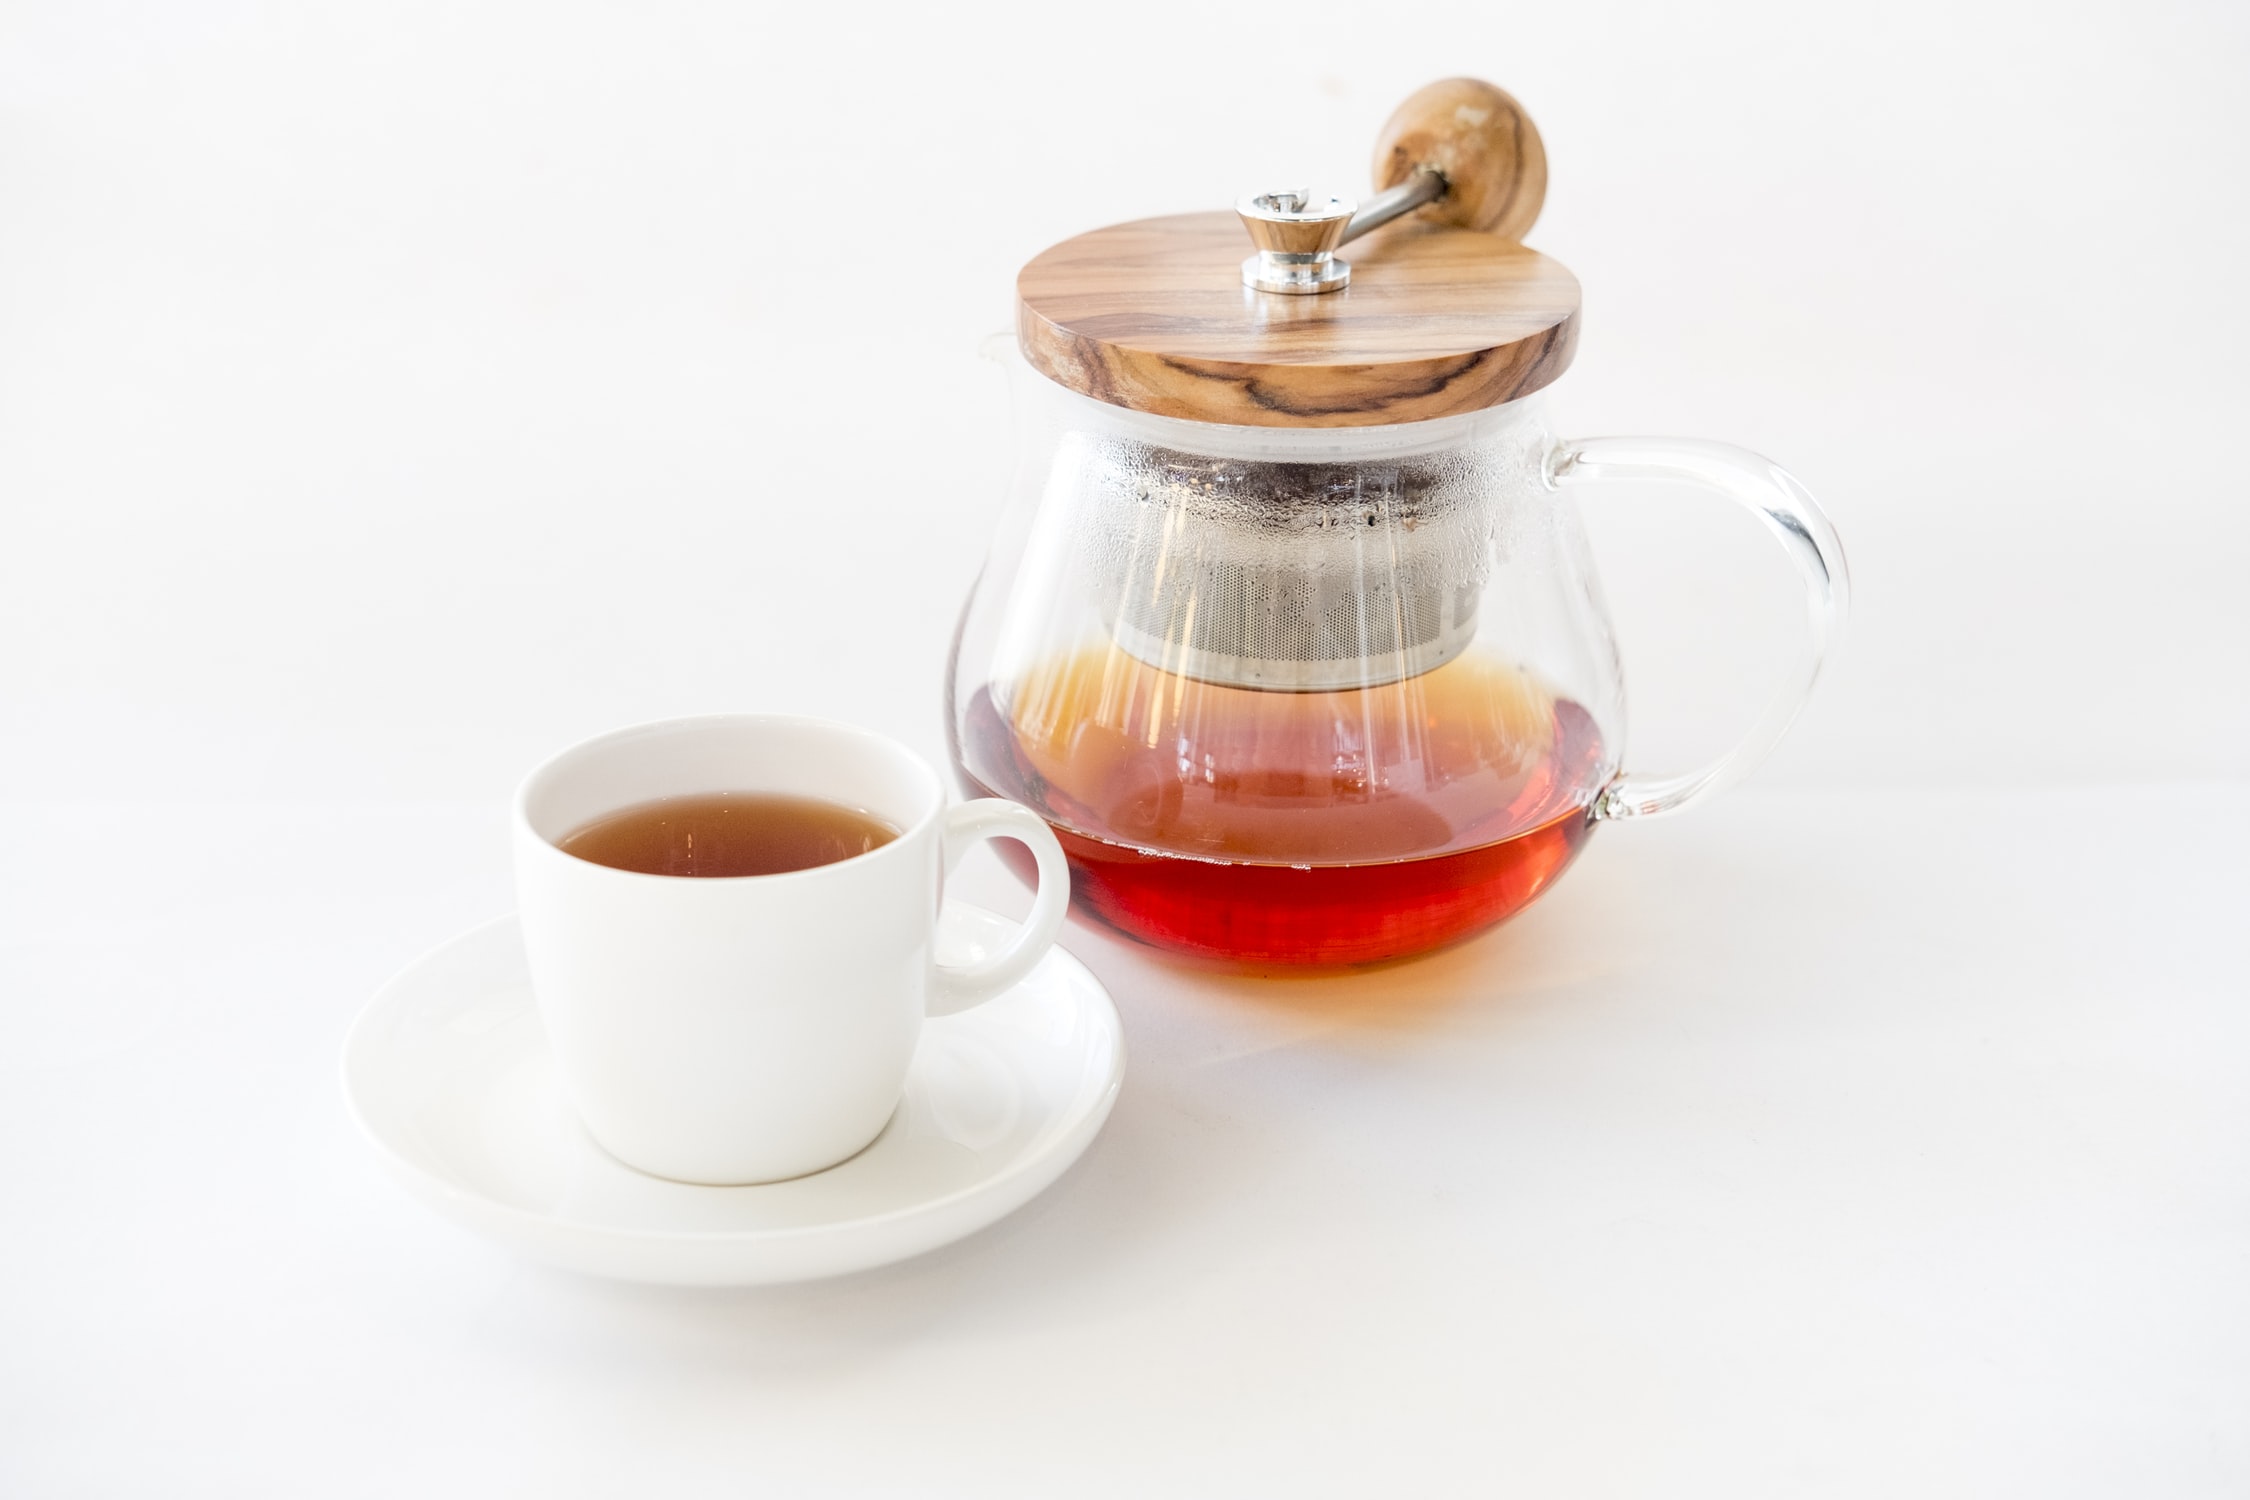 Ya sea frío o caliente, el té es una de las bebidas que puede incluir en su dieta para consumir la cantidad de líquidos que necesita de su cuerpo, mientras disfruta de sabores únicos. (Foto Prensa Libre: Servicios)